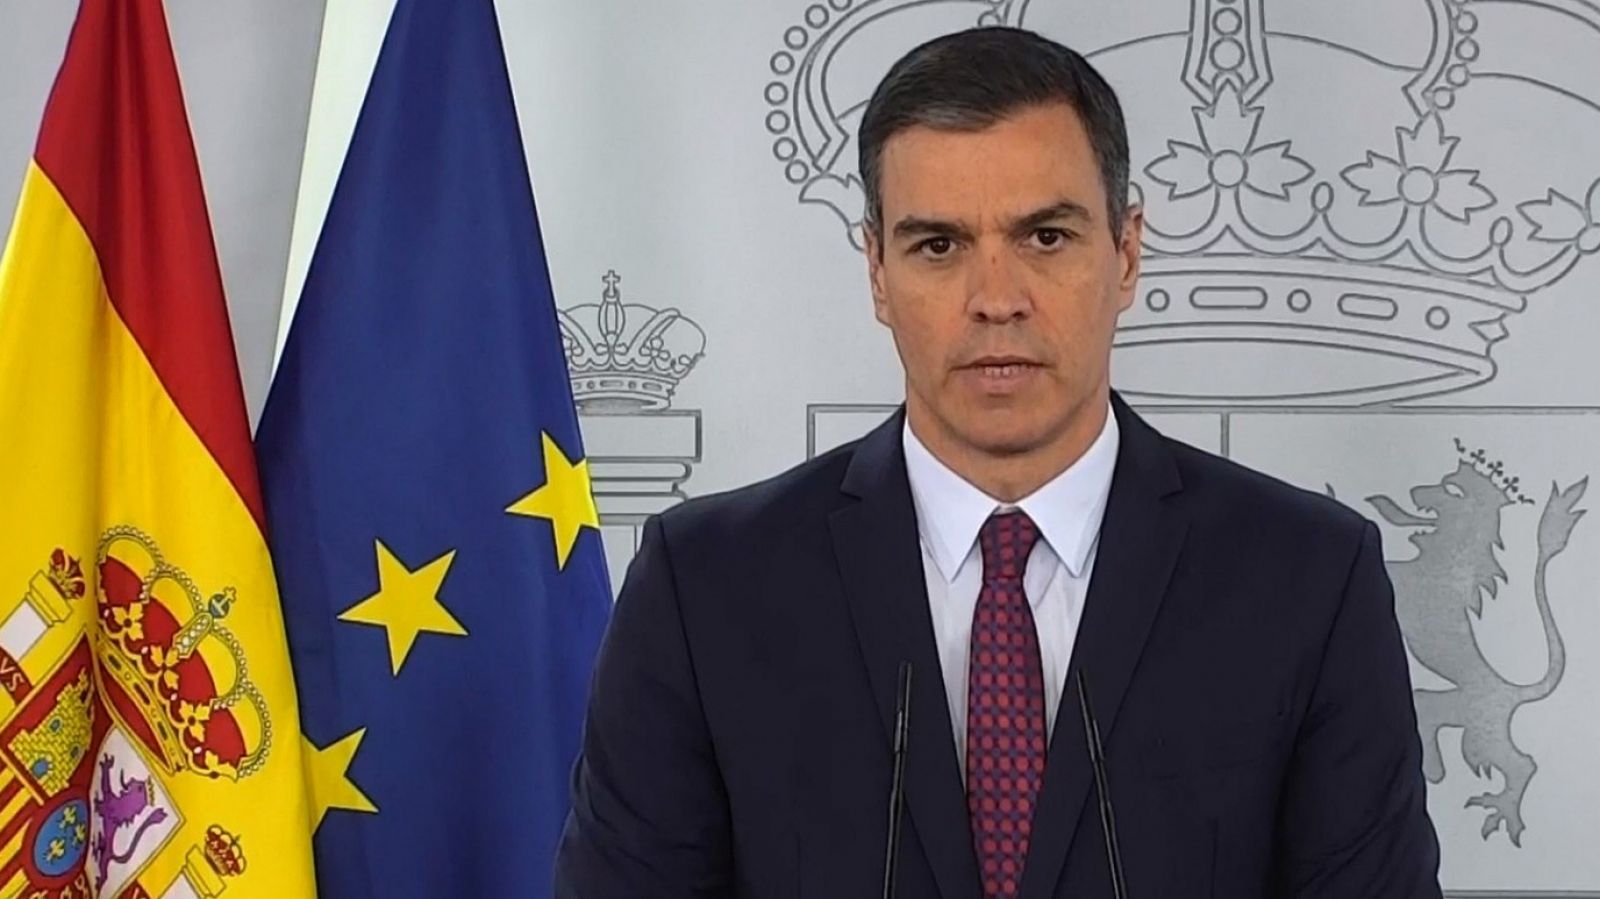 Especial informativo - Comparecencia del presidente del gobierno, Pedro Sánchez - 20/06/20 - RTVE.es